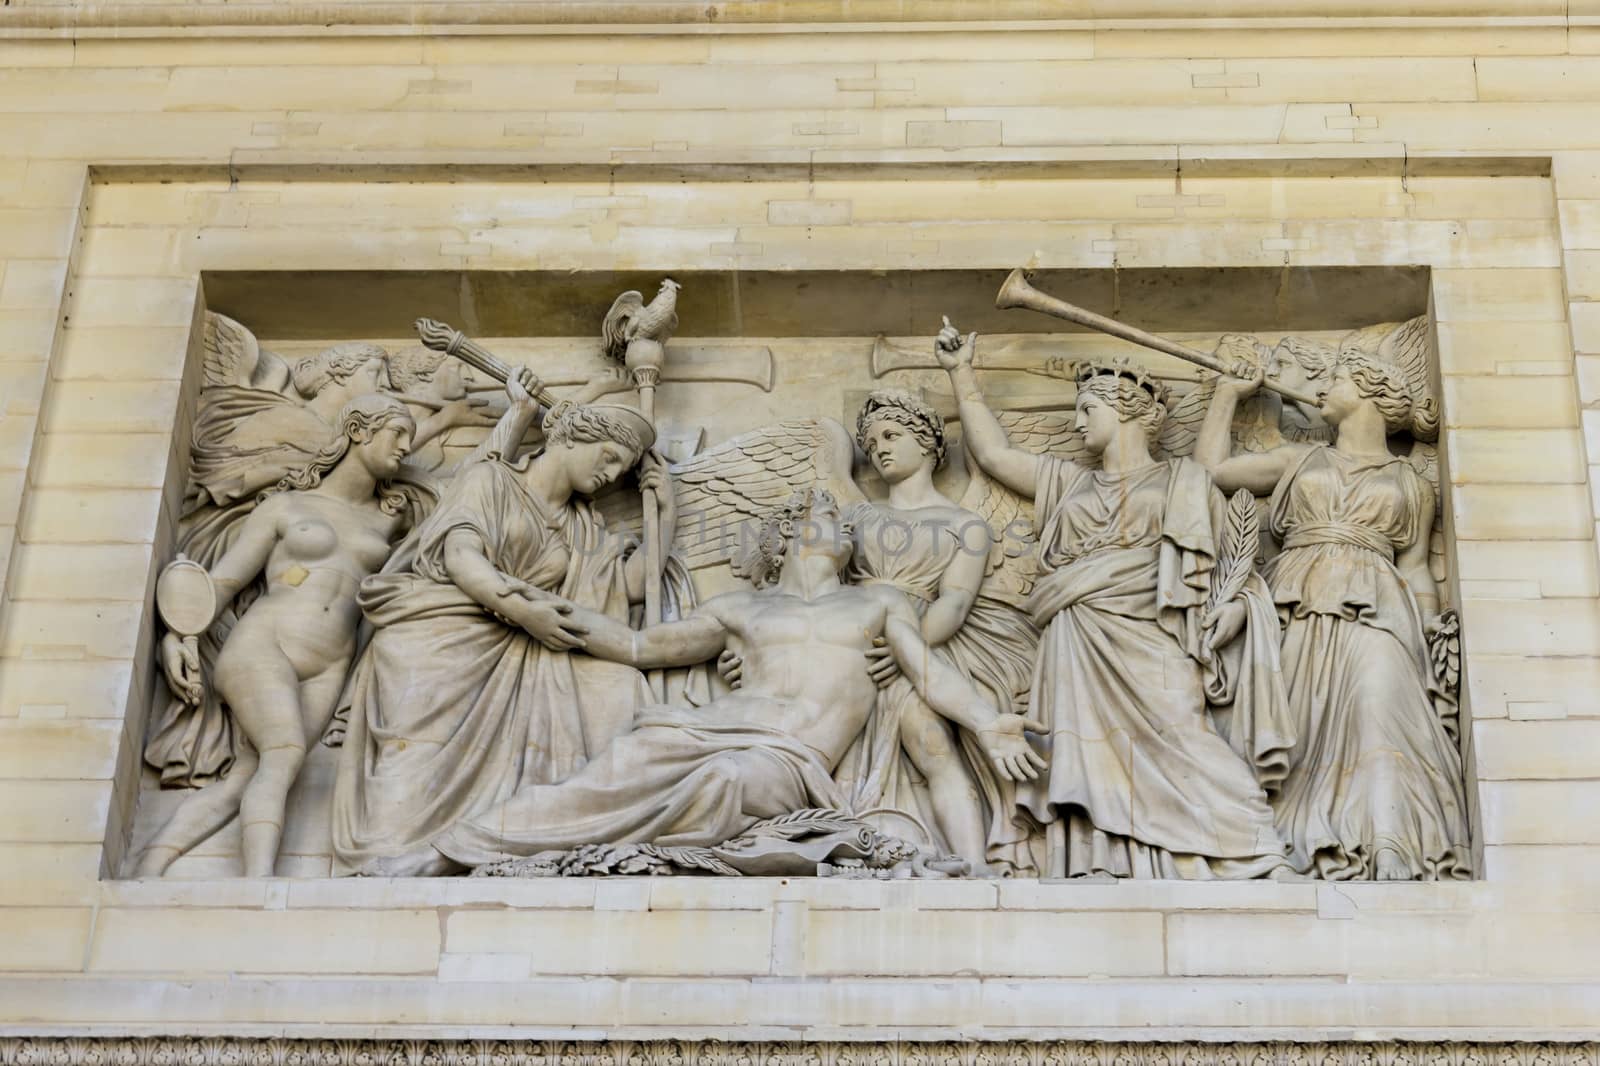 bas relief, Pantheon, Paris, France